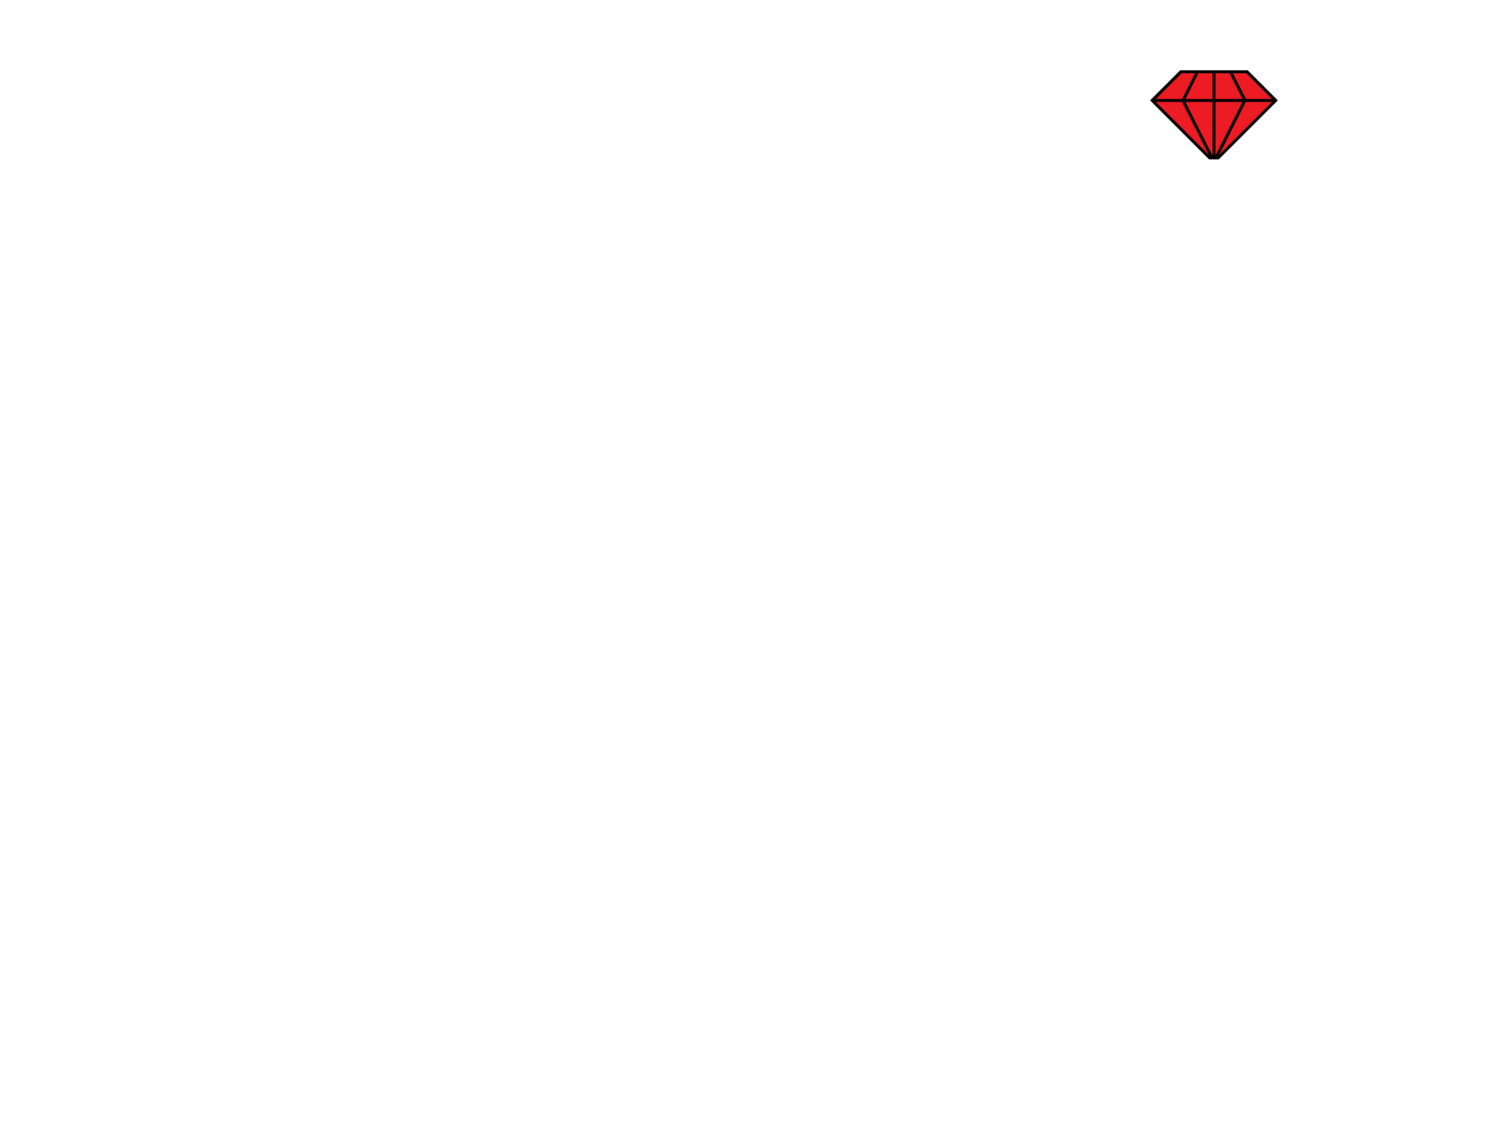 Nevo Zisin Civil Celebrant